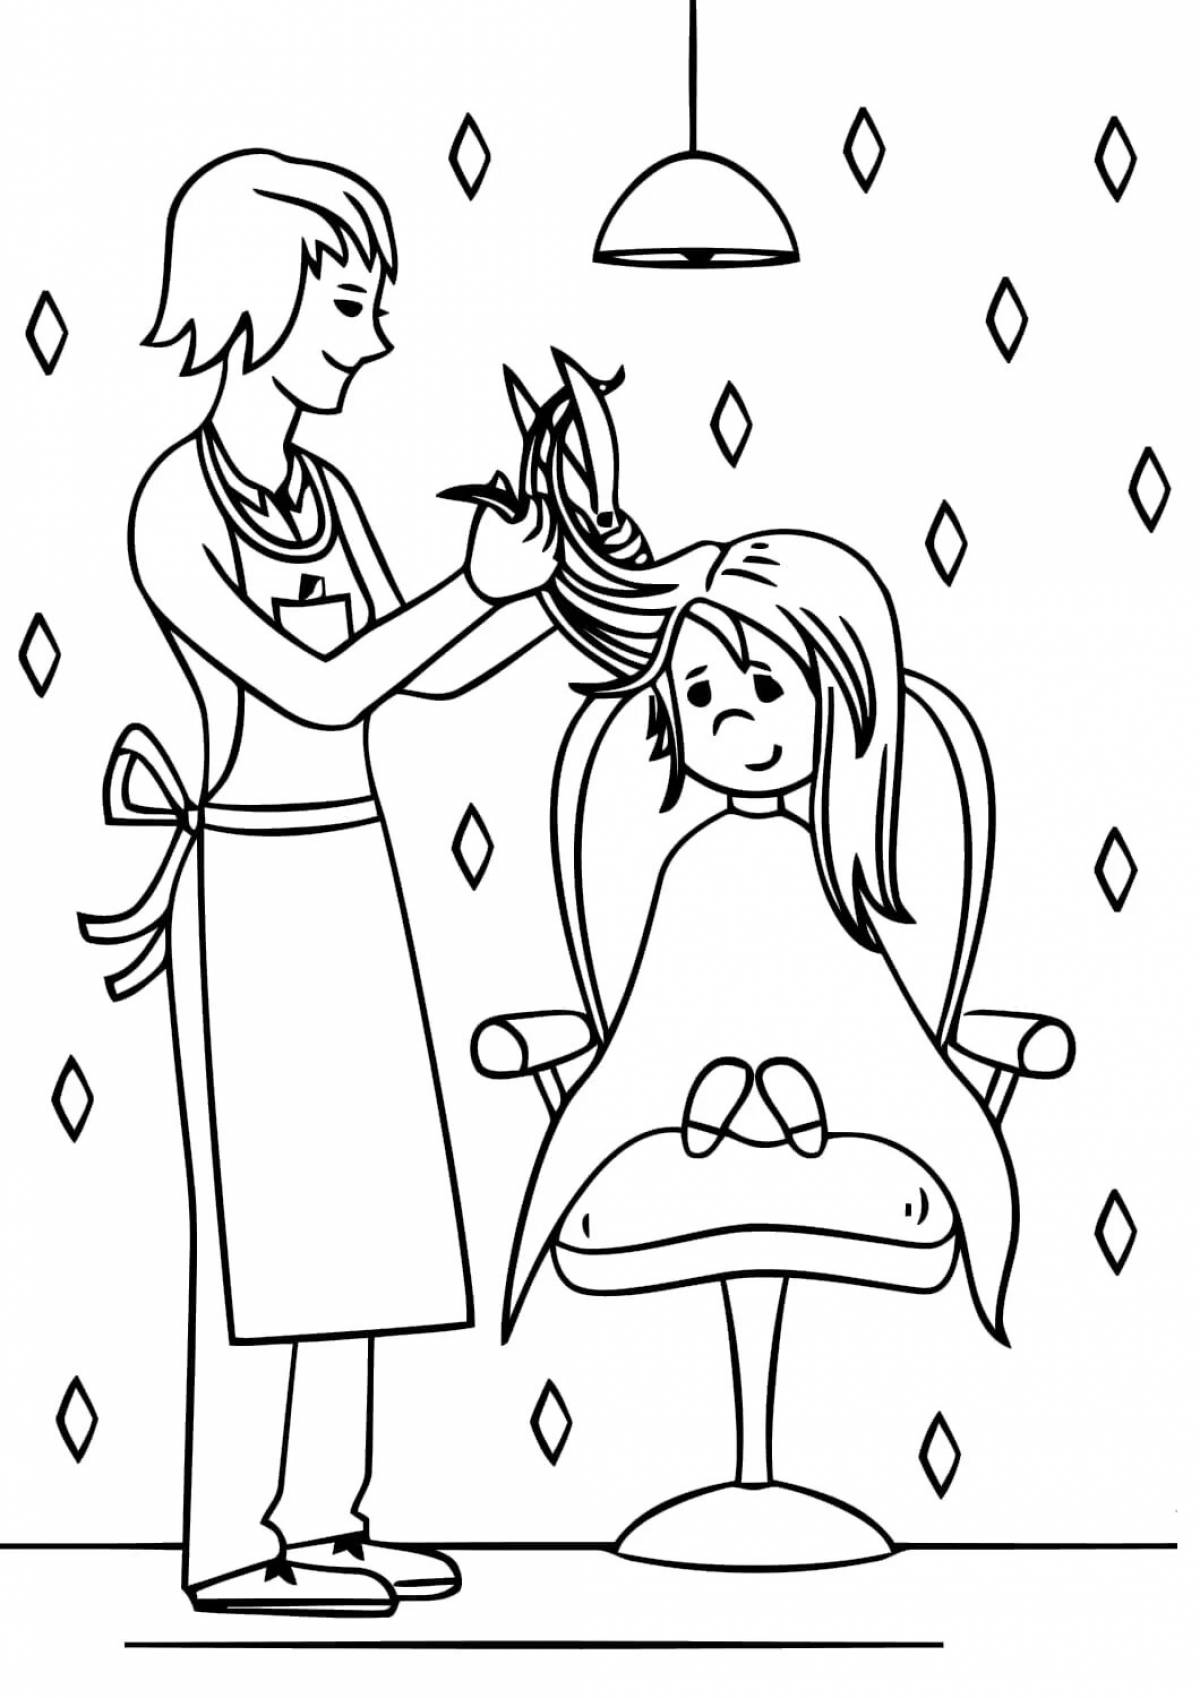 Раскраска для детей профессия мультяшный парикмахер